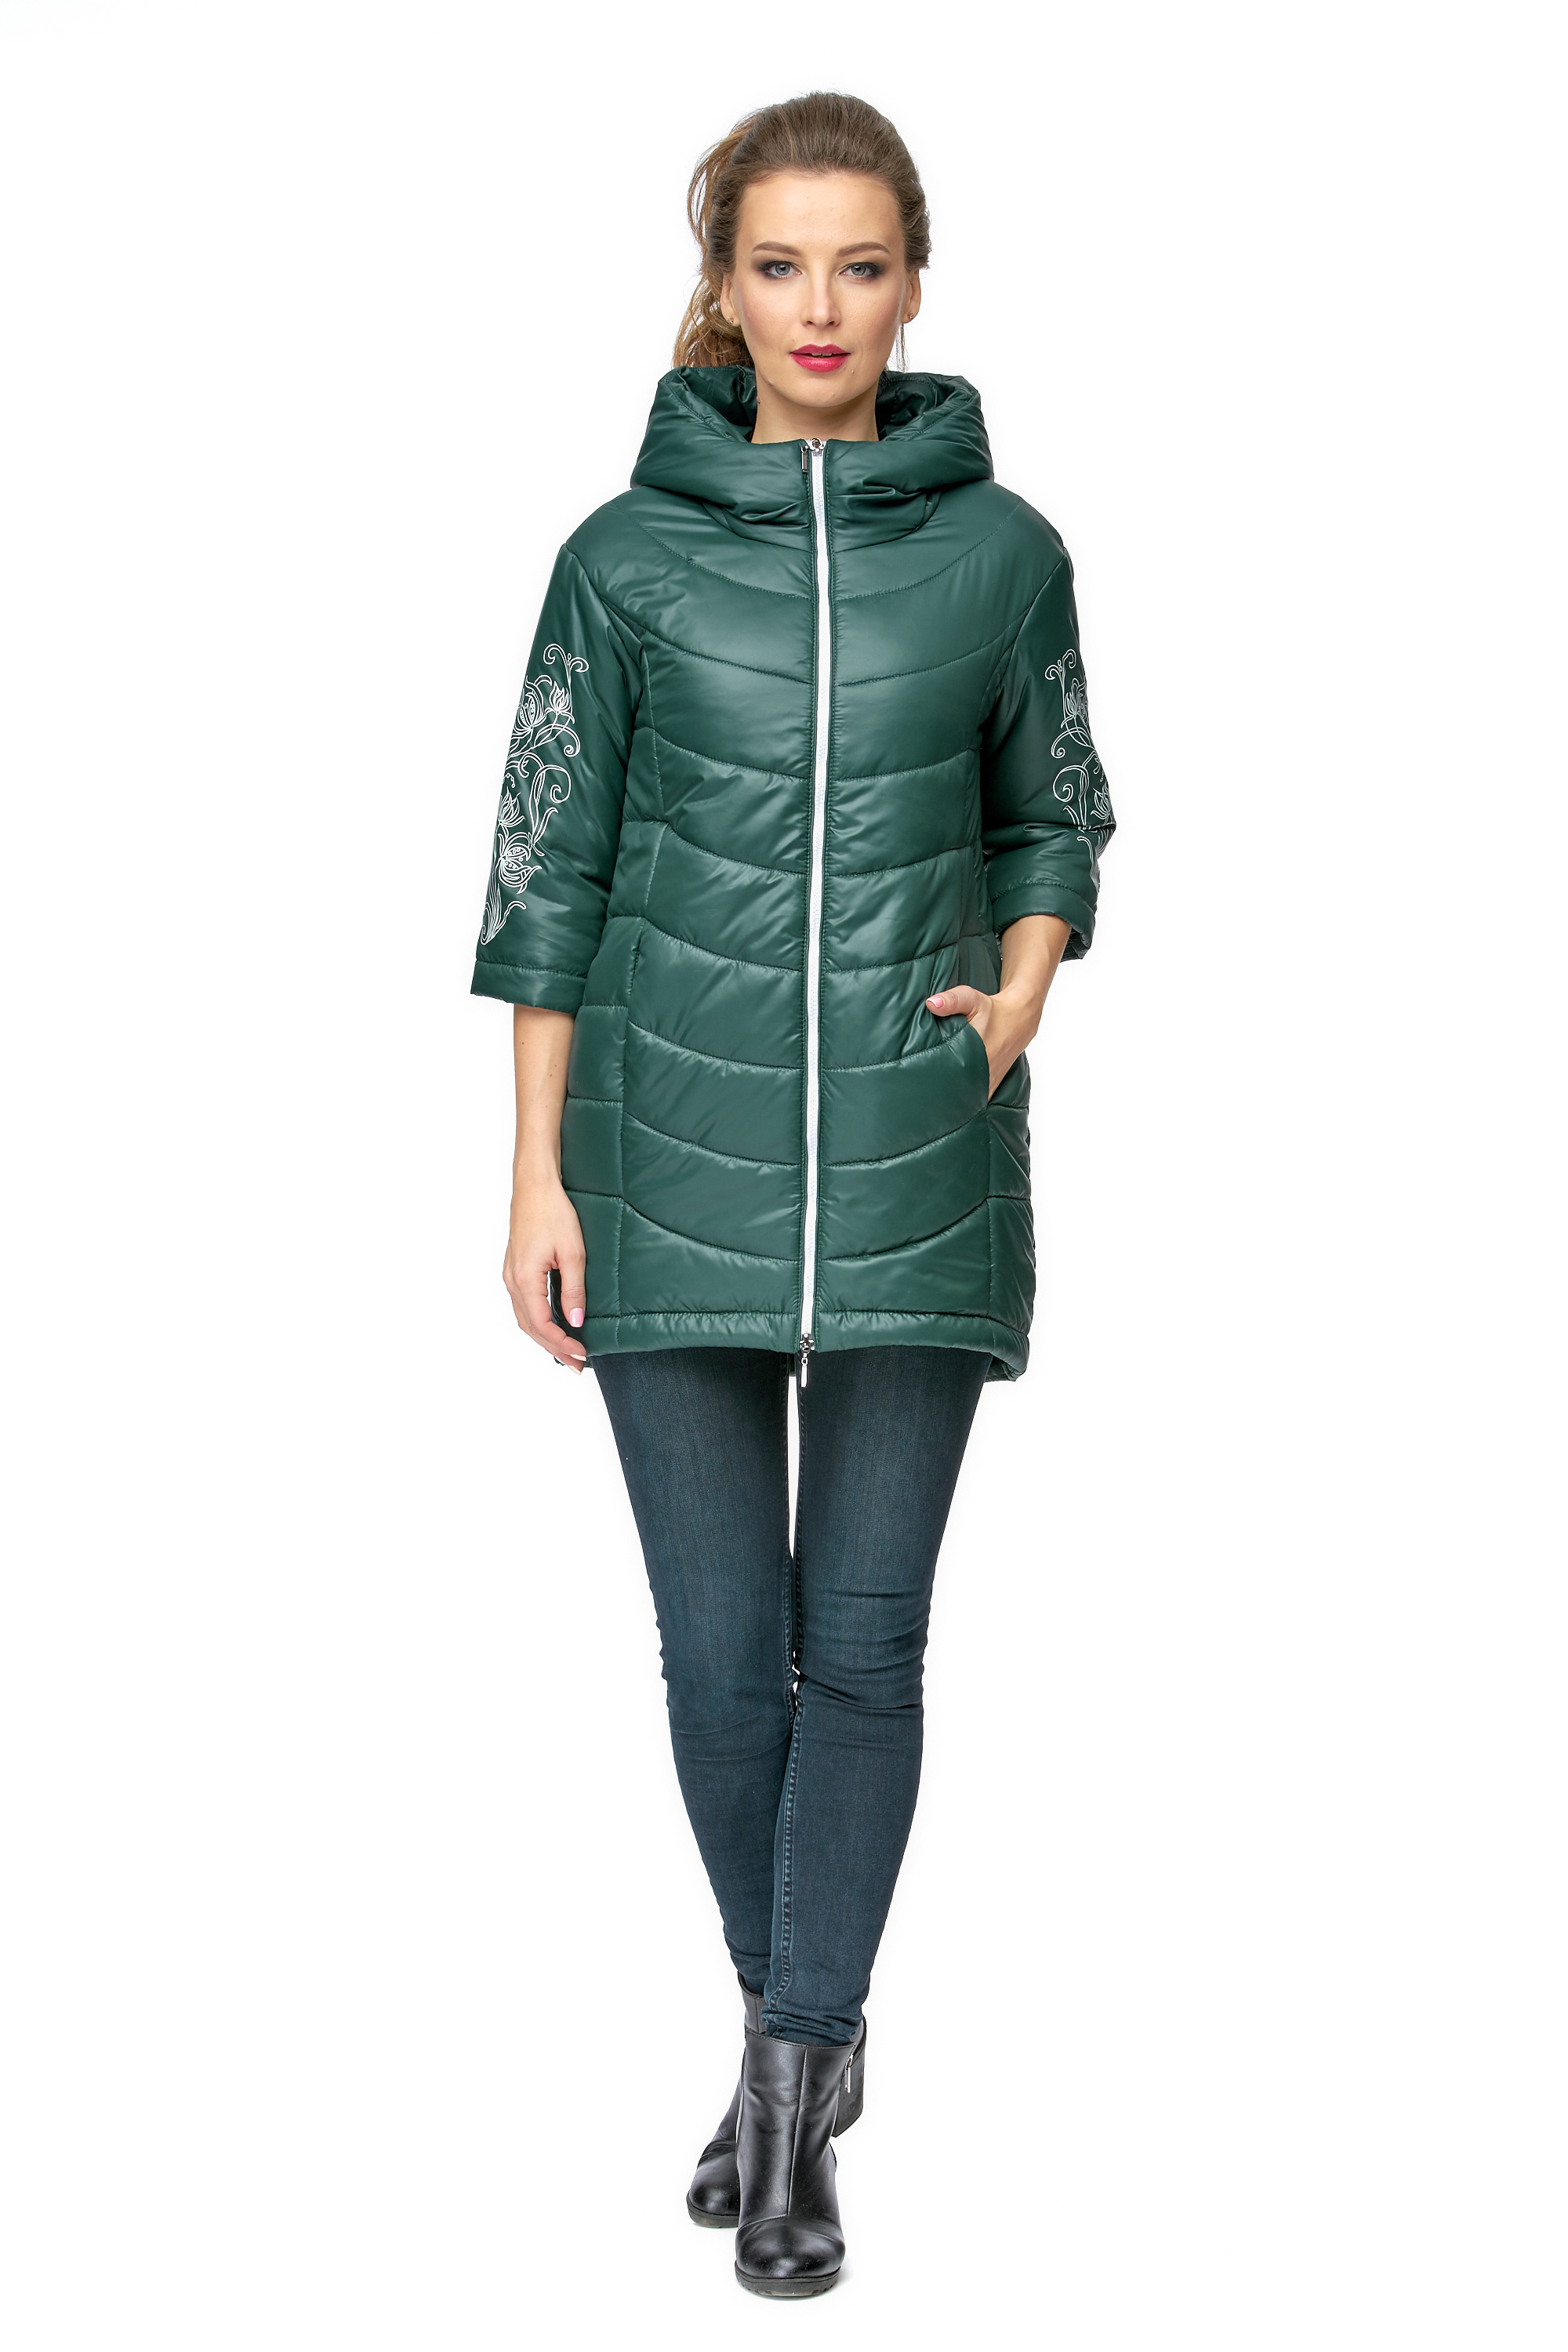 Куртка женская из текстиля с капюшоном МОСМЕХА зеленый 8001024 